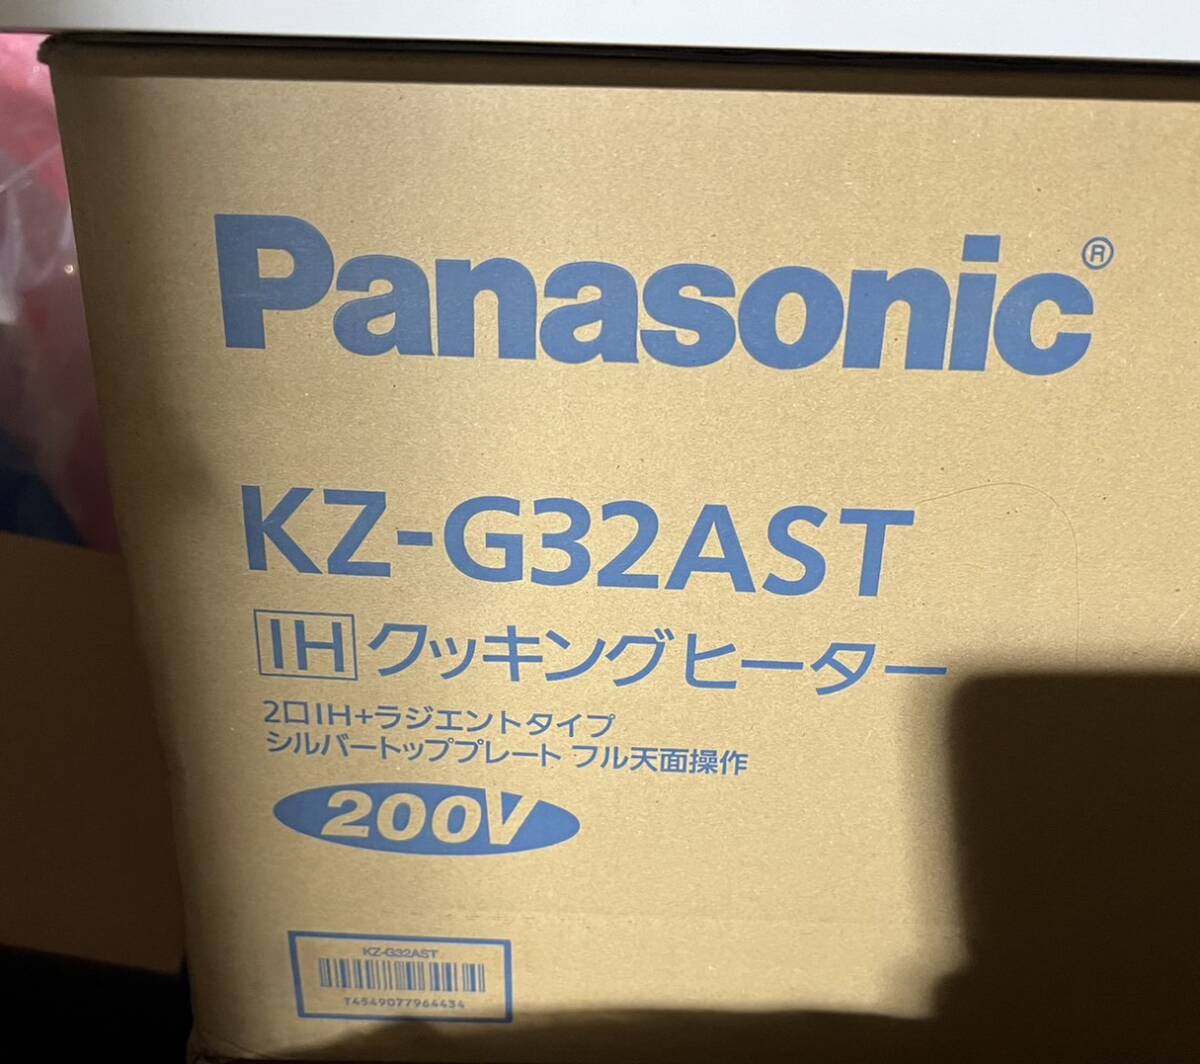 Panasonic KZ-G32AST IHクッキングヒーター ２口IH+ラジエントタイプ シルバートップレートの画像1